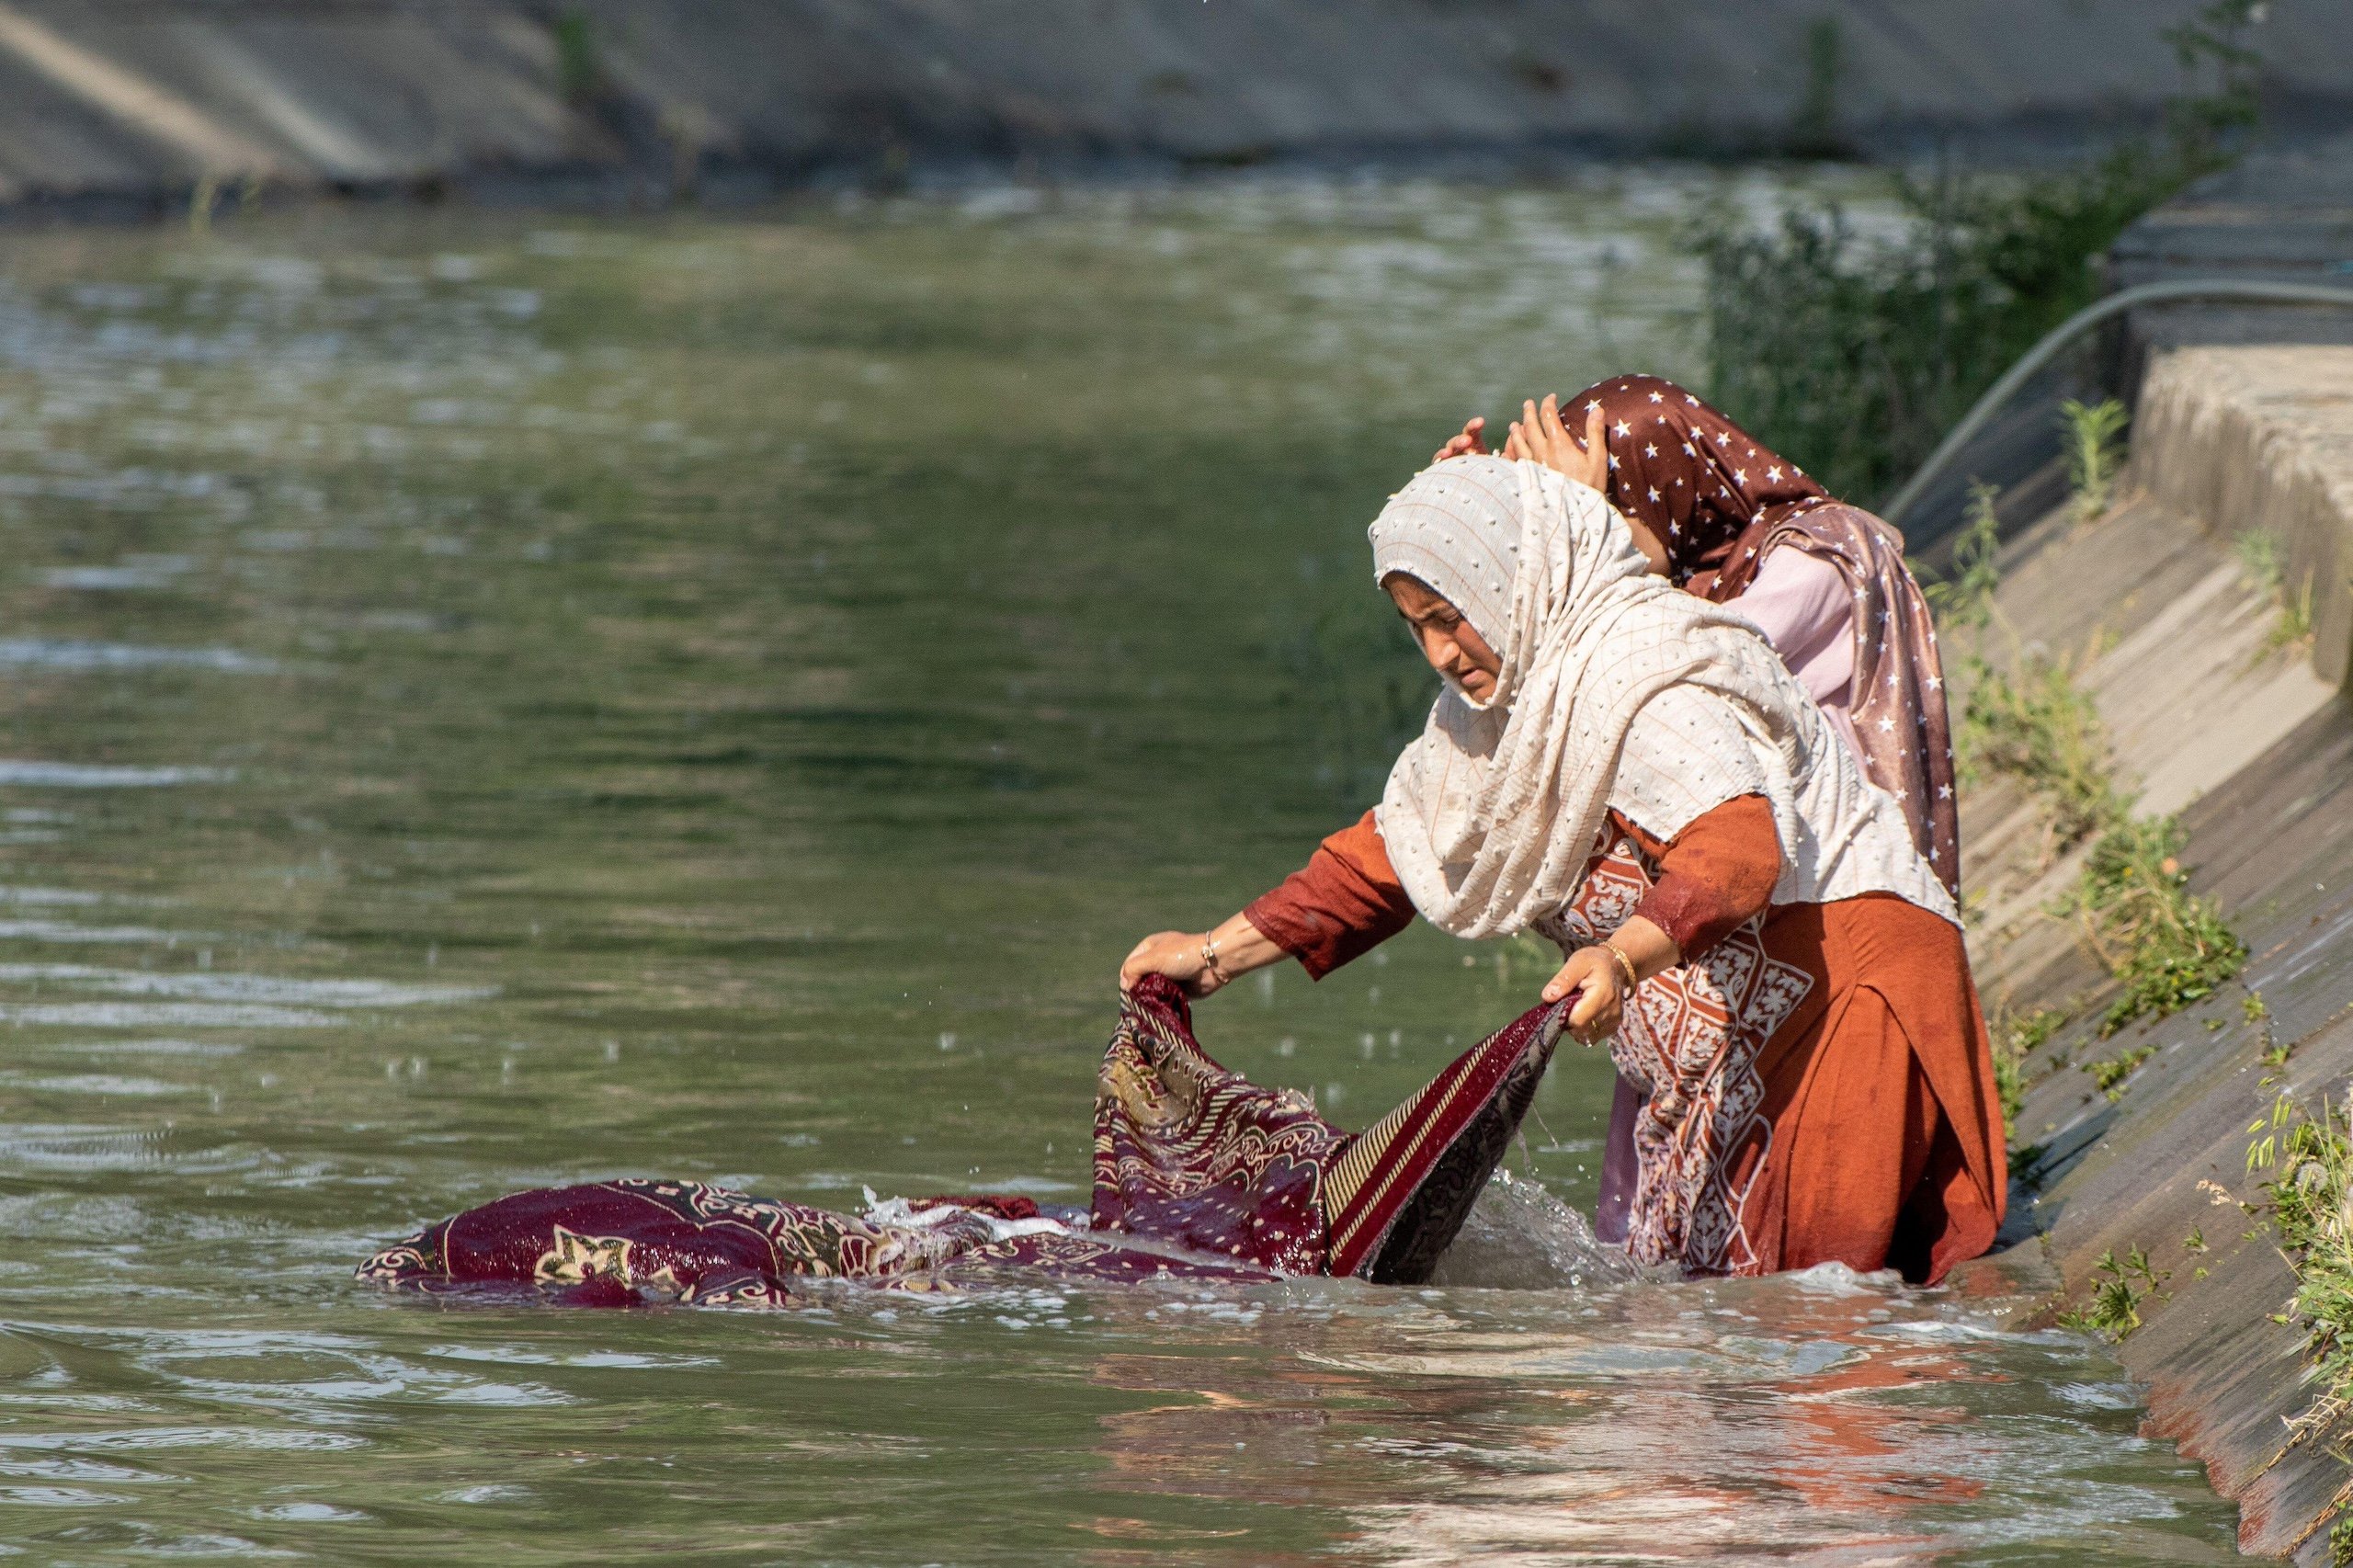 <p><span style="font-weight: 400;">जम्मू एवं कश्मीर की ग्रीष्मकालीन राजधानी श्रीनगर में एक नहर में कंबल धोती कश्मीरी महिलाएं (फोटो: अलामी)</span></p>